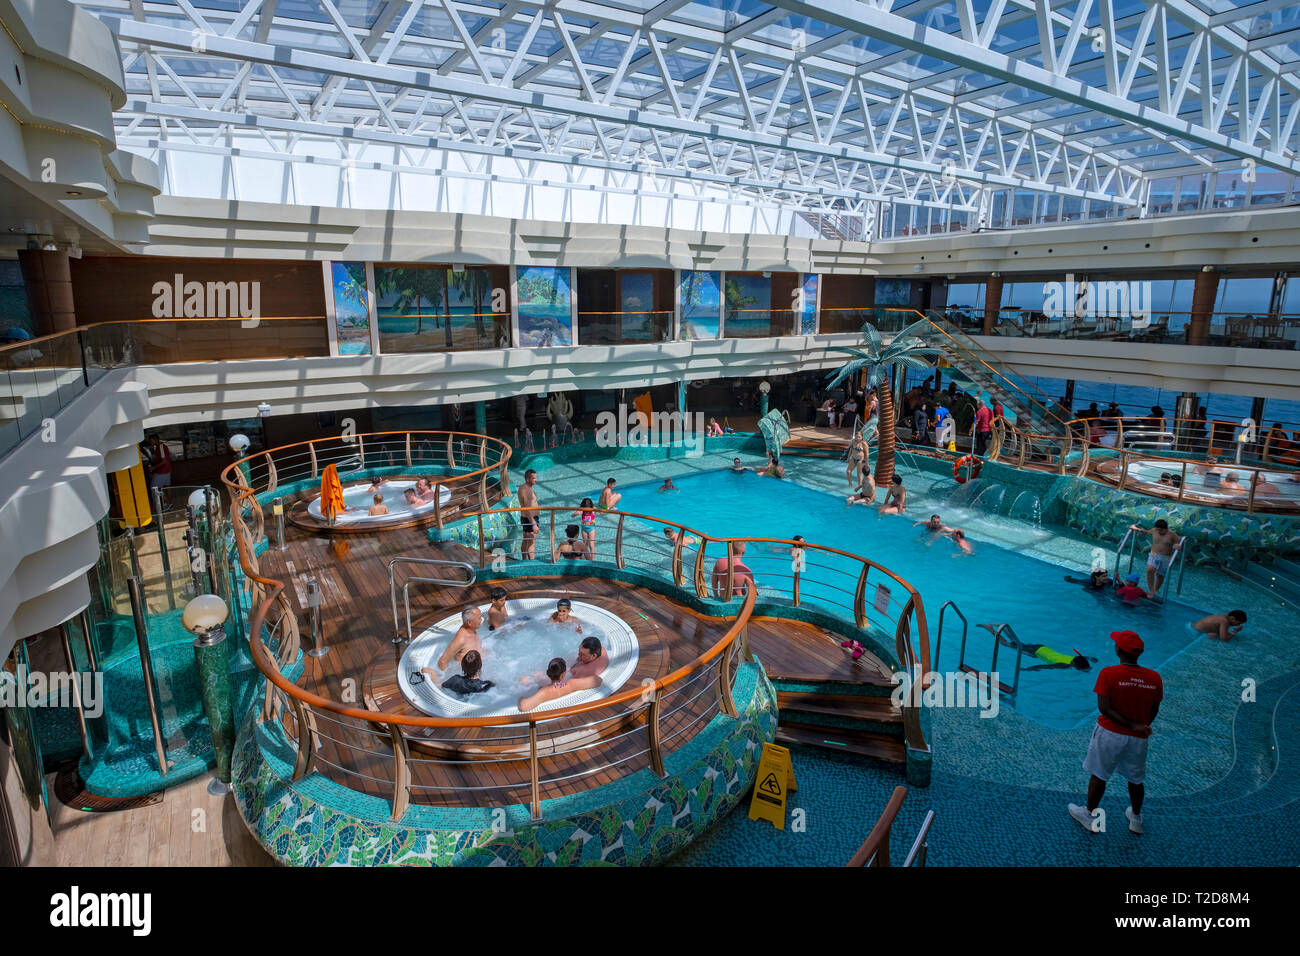 Personen Die Das Innere Schwimmbad Auf Dem Kreuzfahrtschiff Msc Splendida Stockfotografie Alamy 1112